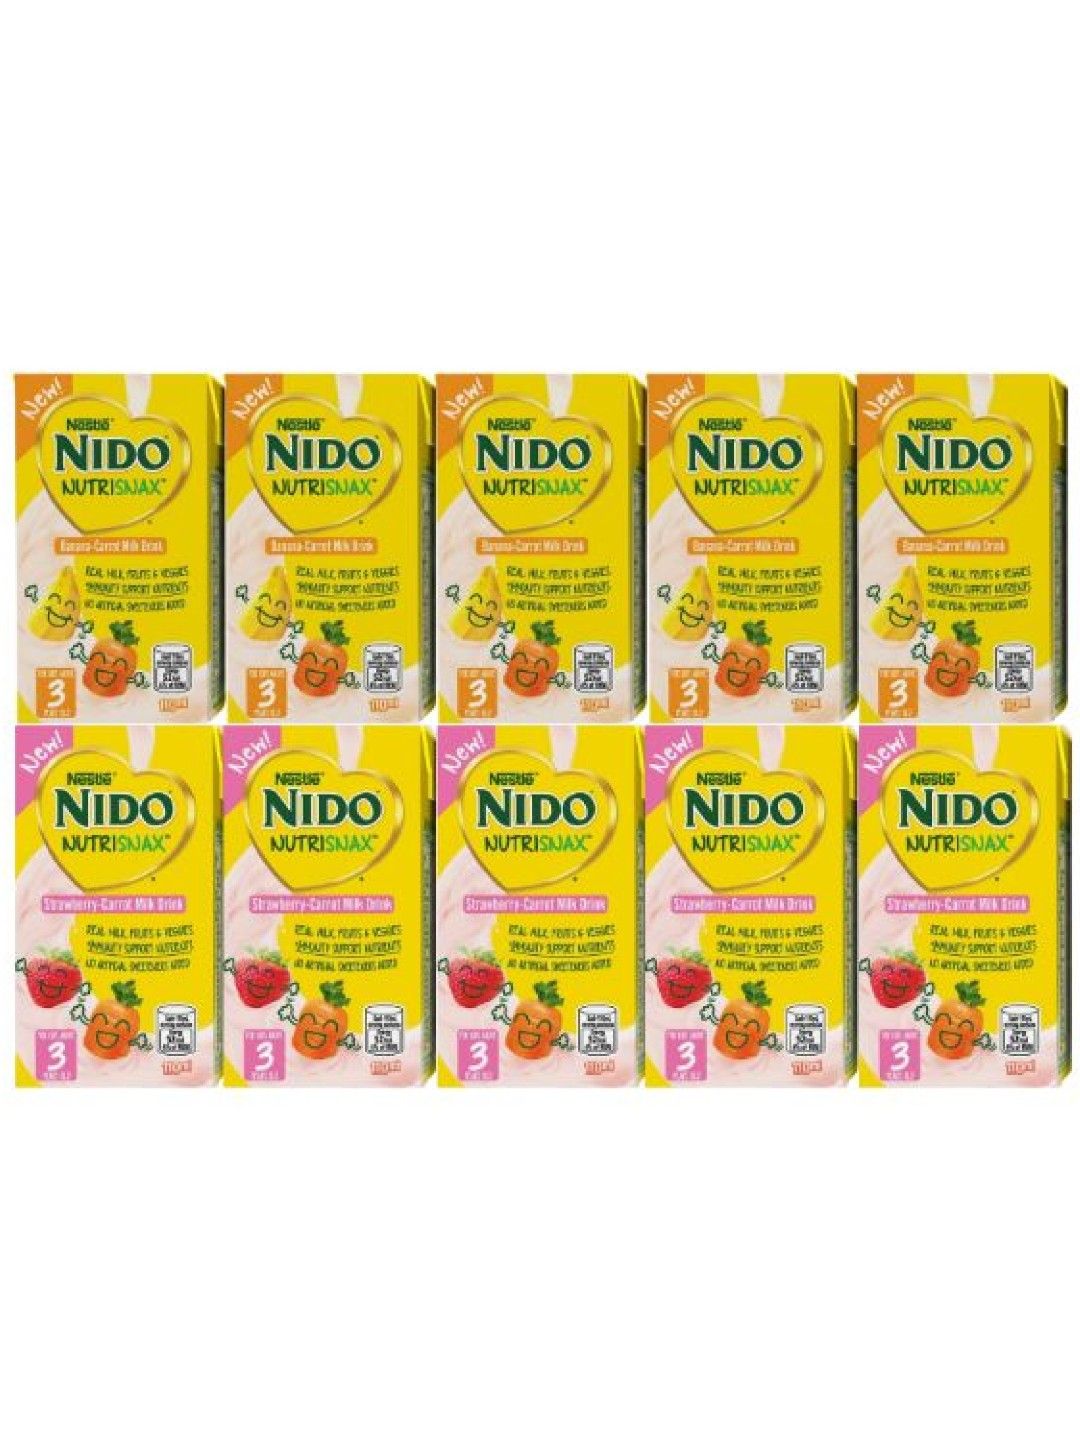 Nido NutriSnax Assorted - Bundle of 10